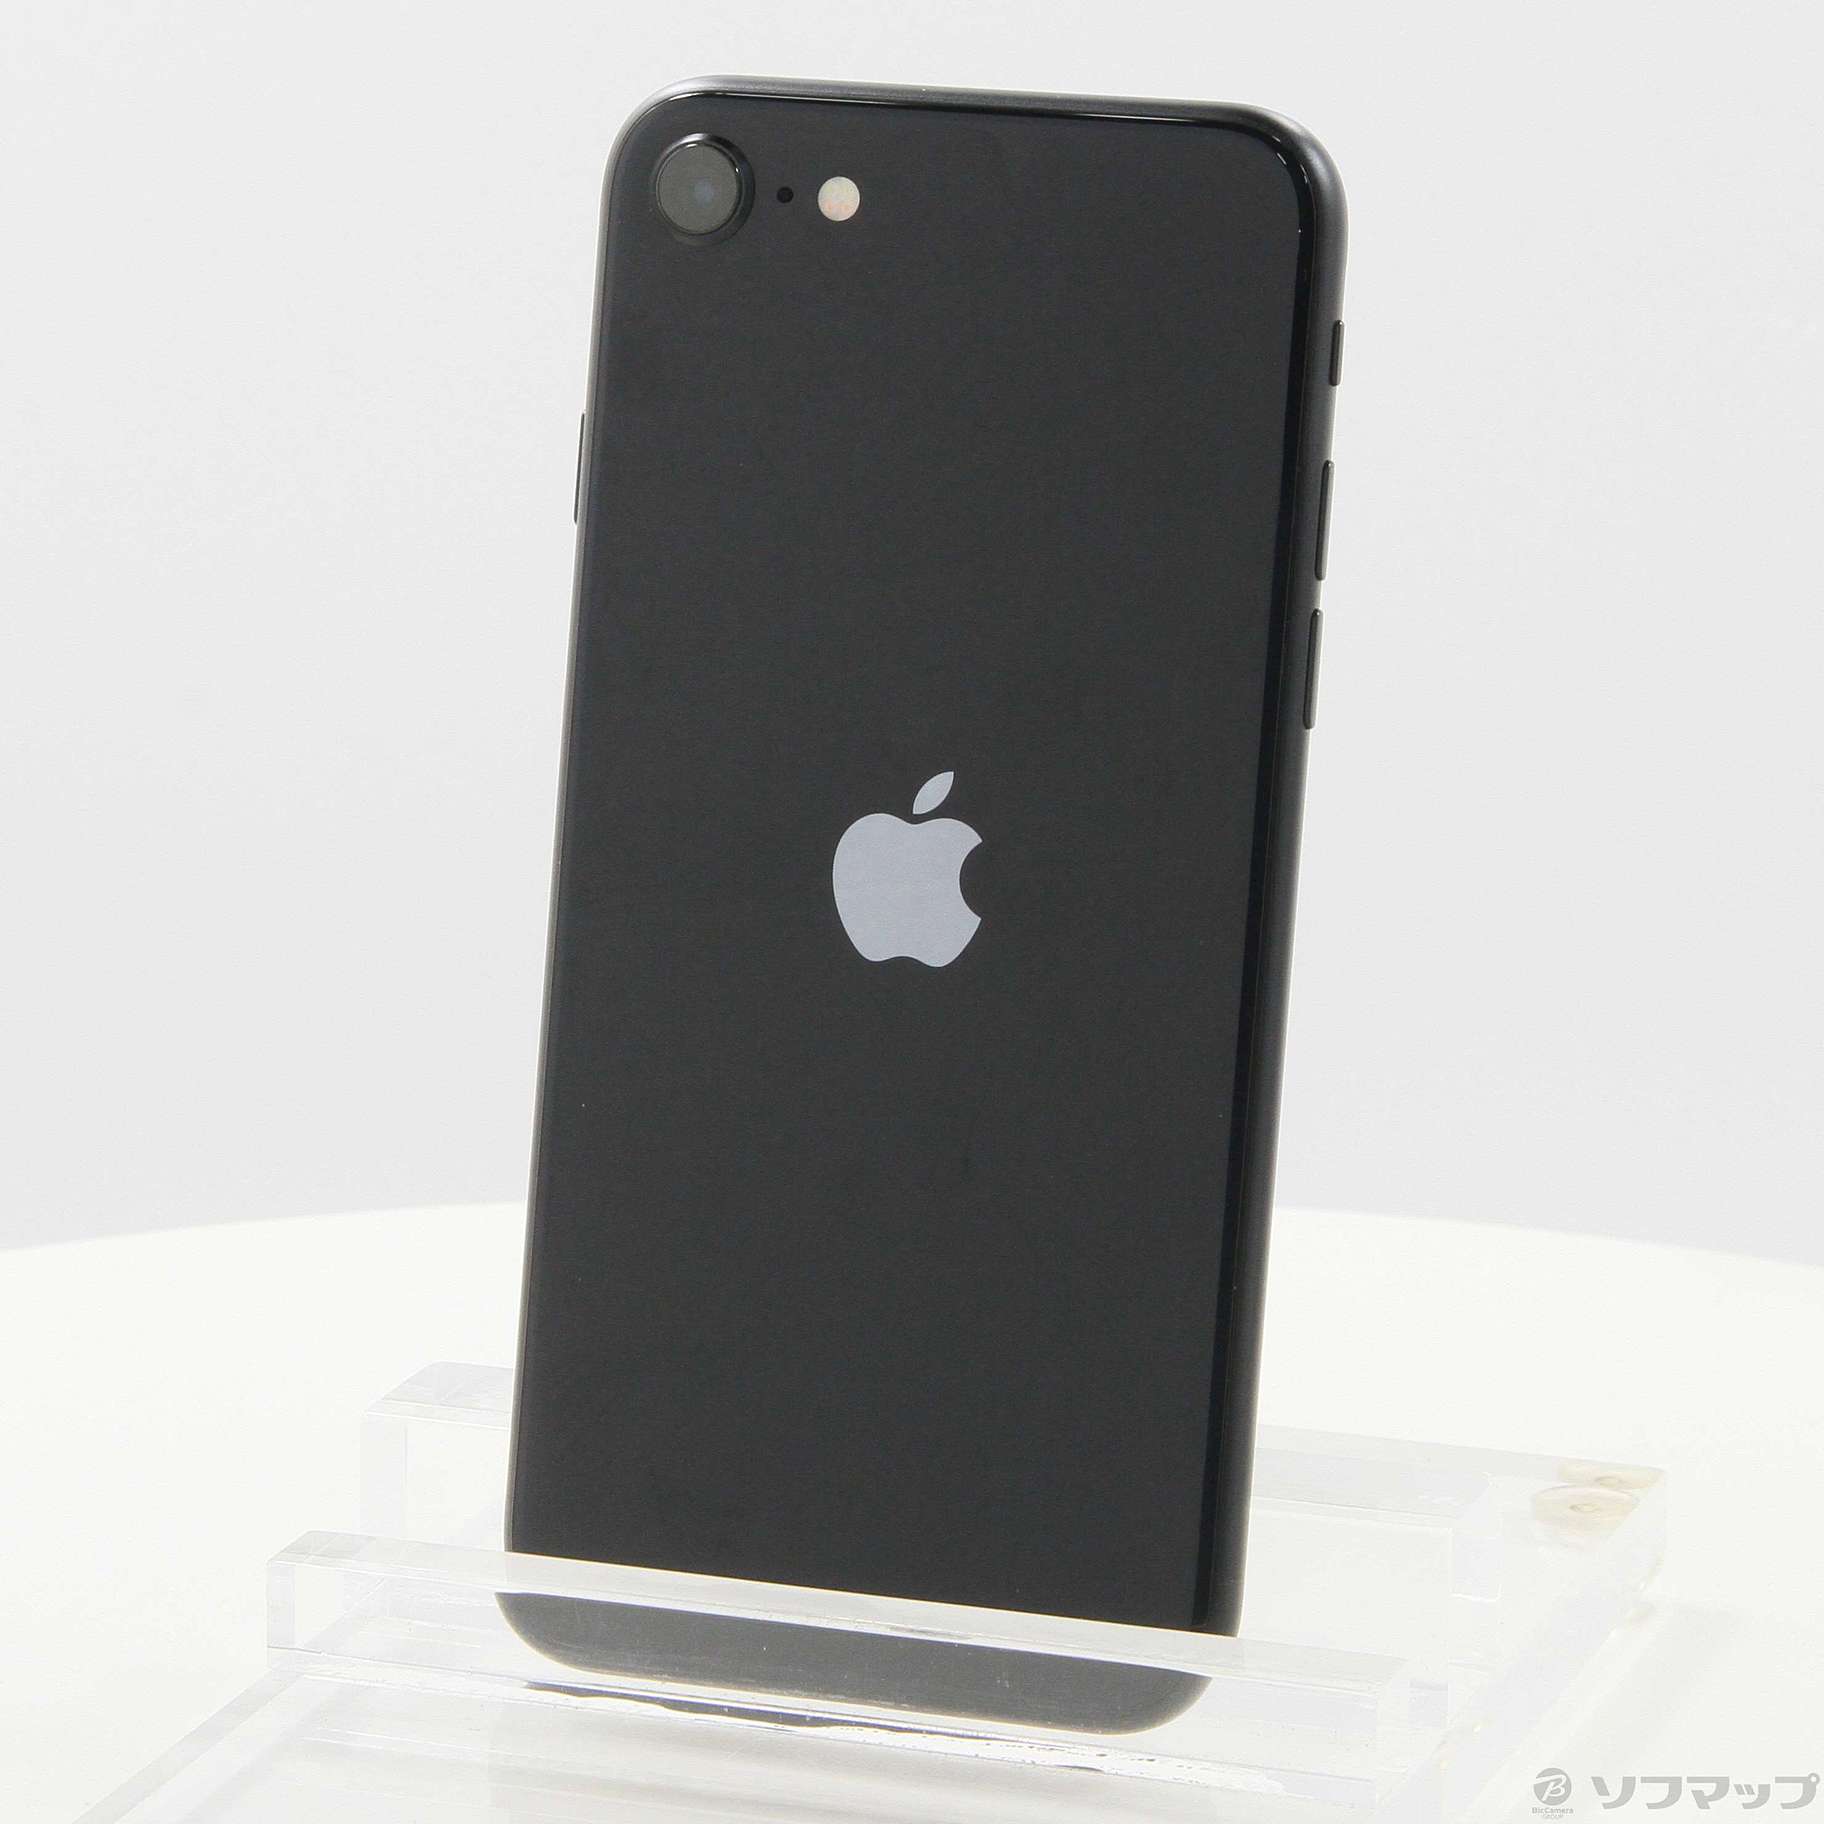 iPhone SE (第3世代) 64GB SIMフリー [ミッドナイト] 中古(白ロム)価格